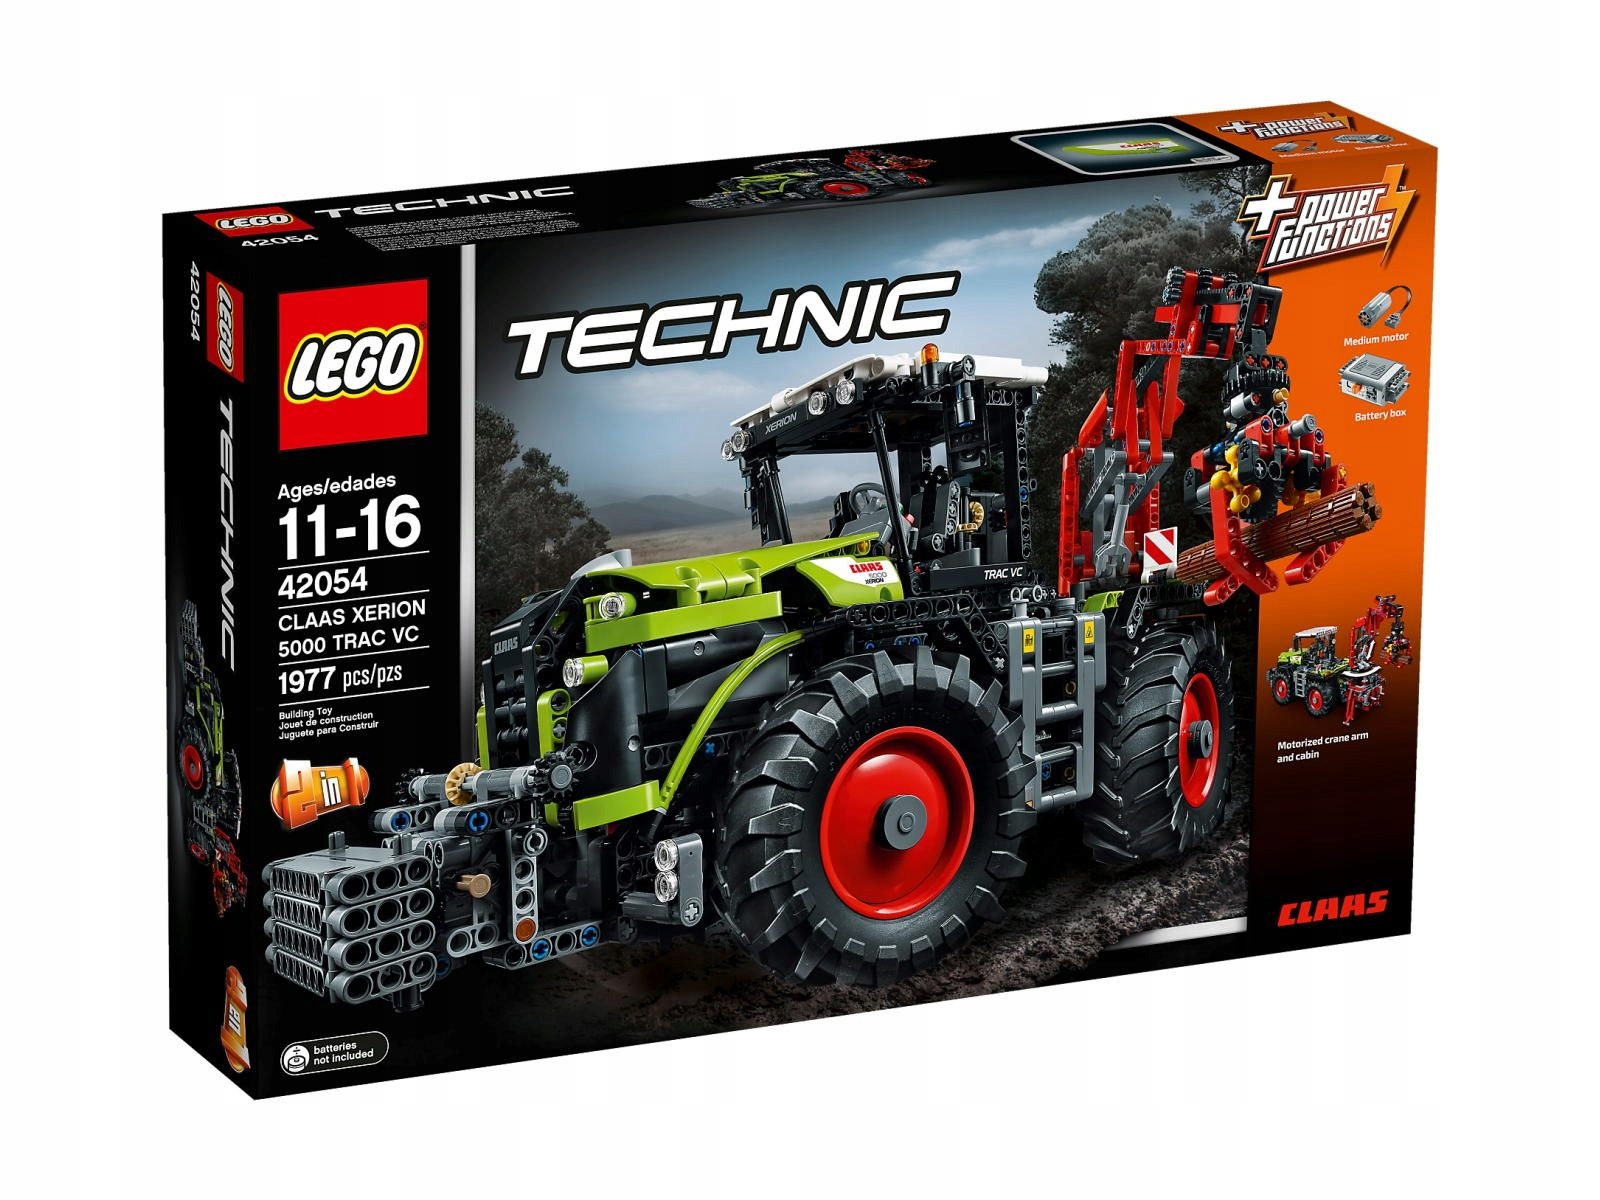 LEGO Technic 42054 porównaj ceny - Allegro.pl